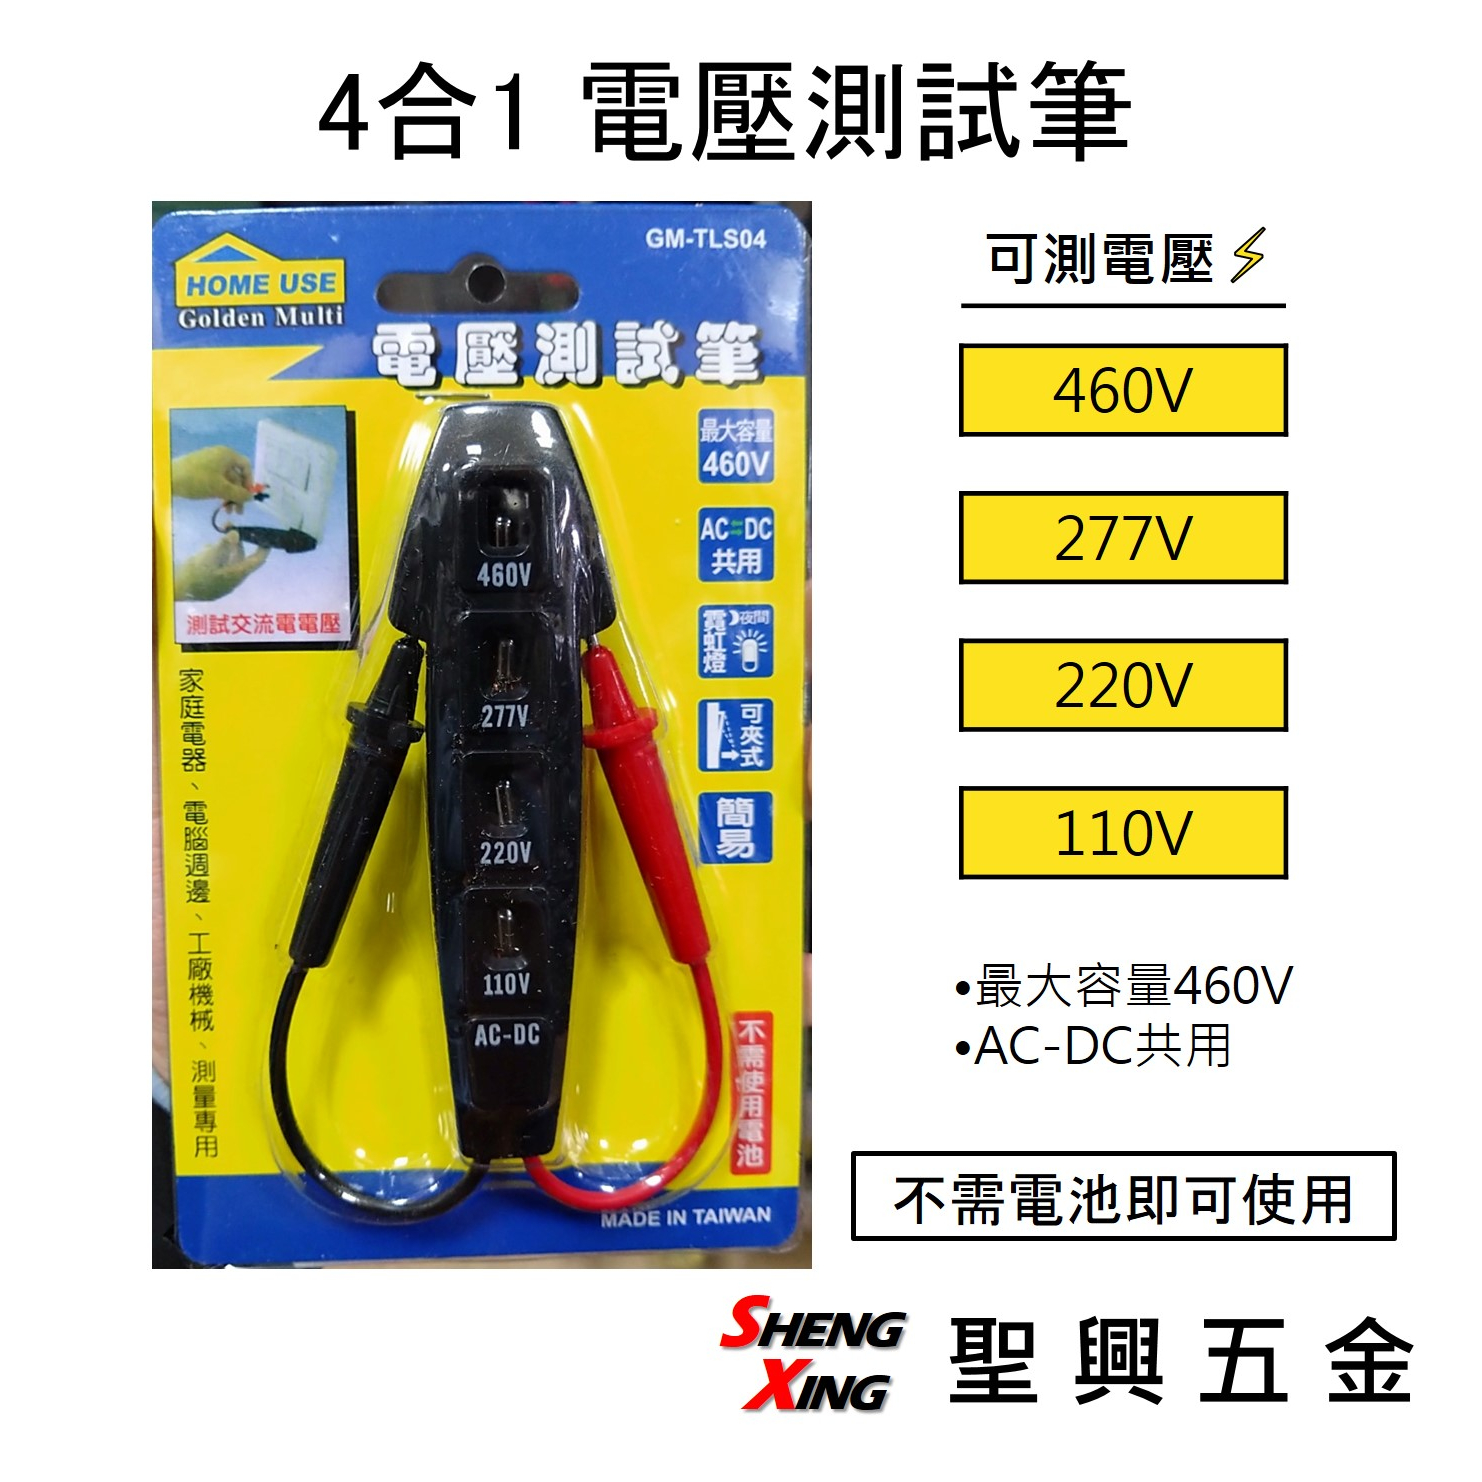 [聖興五金] 4合1電壓測試筆 測試交流電110V-460V 無需電池 簡易測電筆 檢測工具 台灣製造